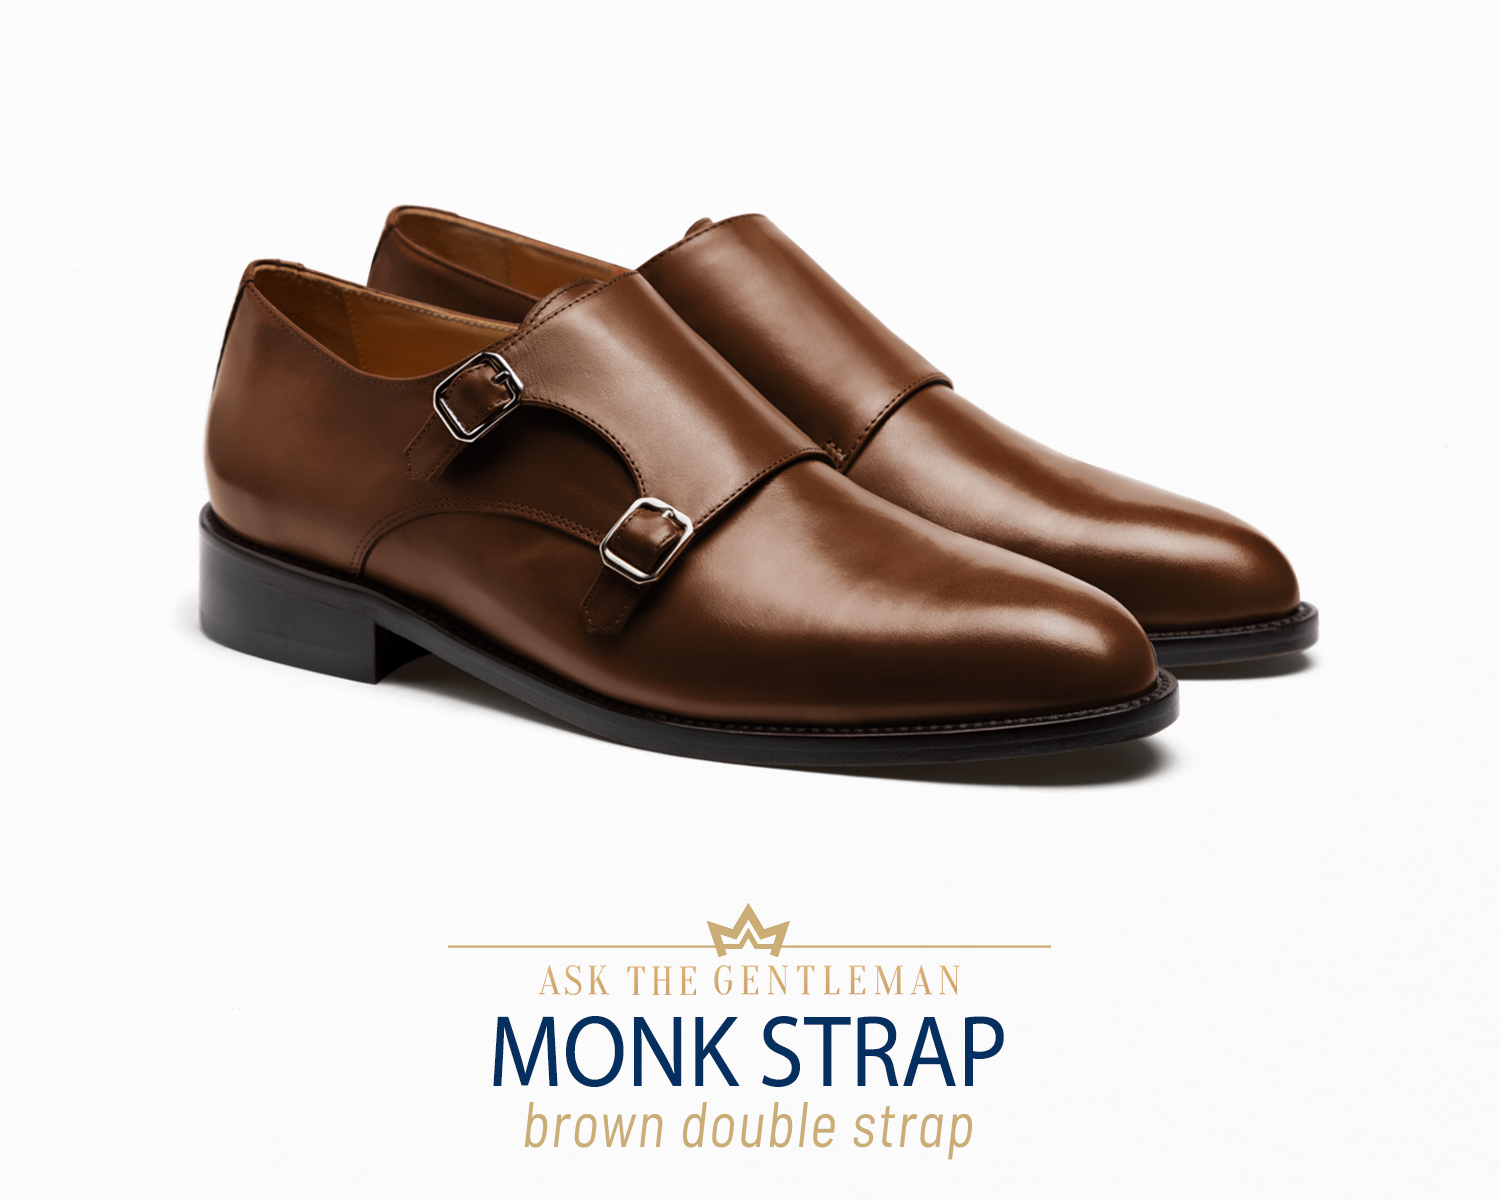 Brown monk strap dress shoe type